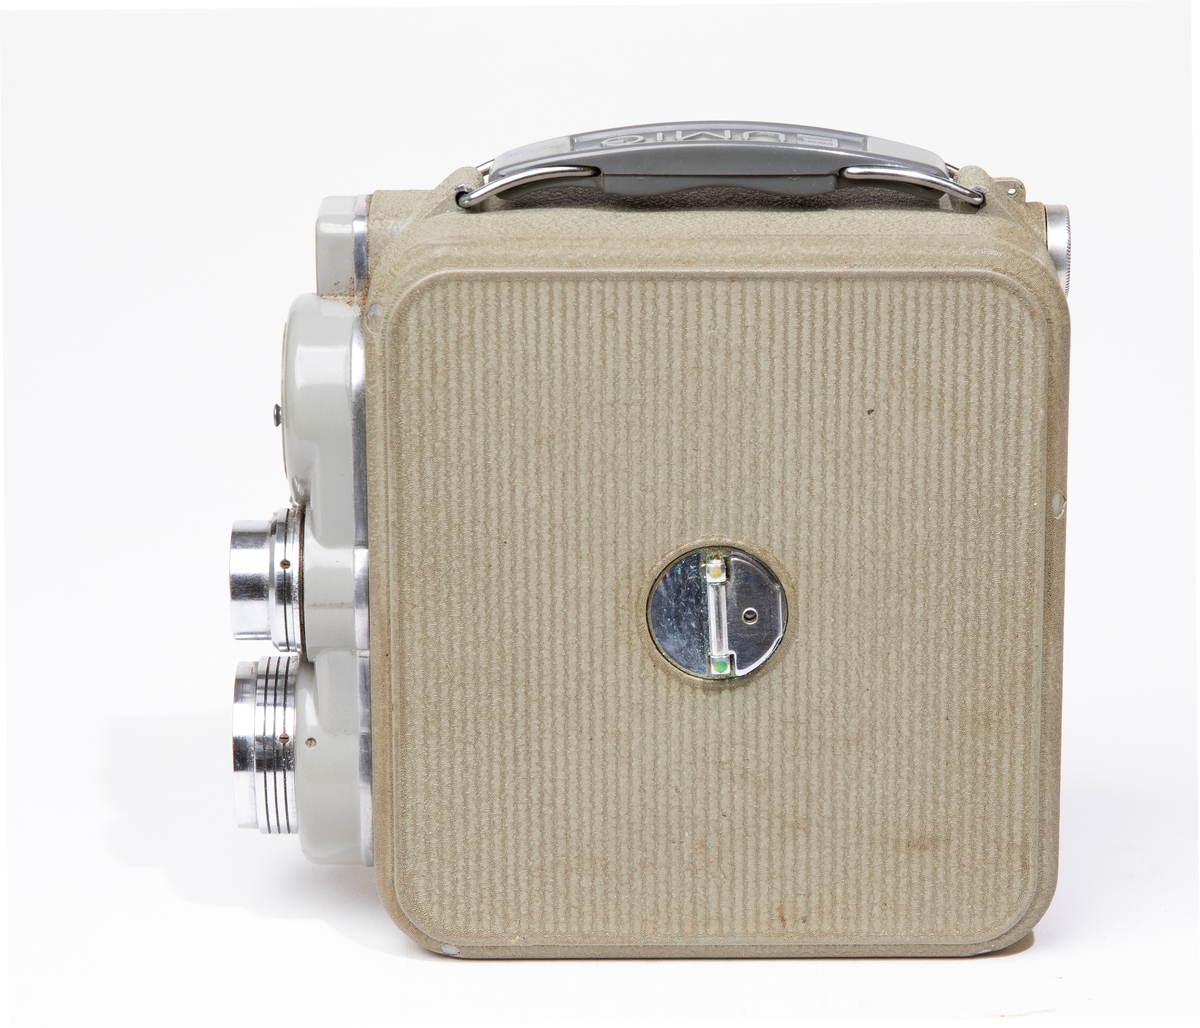 Filmkamera, dubbel-8 Eumig C 3, med kamerahus av grå metall, försedd med fjädermotor. Handtag av plast. Filmkameran är placerad i en kameraväska av brunt läder, JM 56584, och skruvas fast i väskan med en skruv. I kameraväskan förvaras ett litet linsskydd i en röd påse, och en fjärrutlösare.